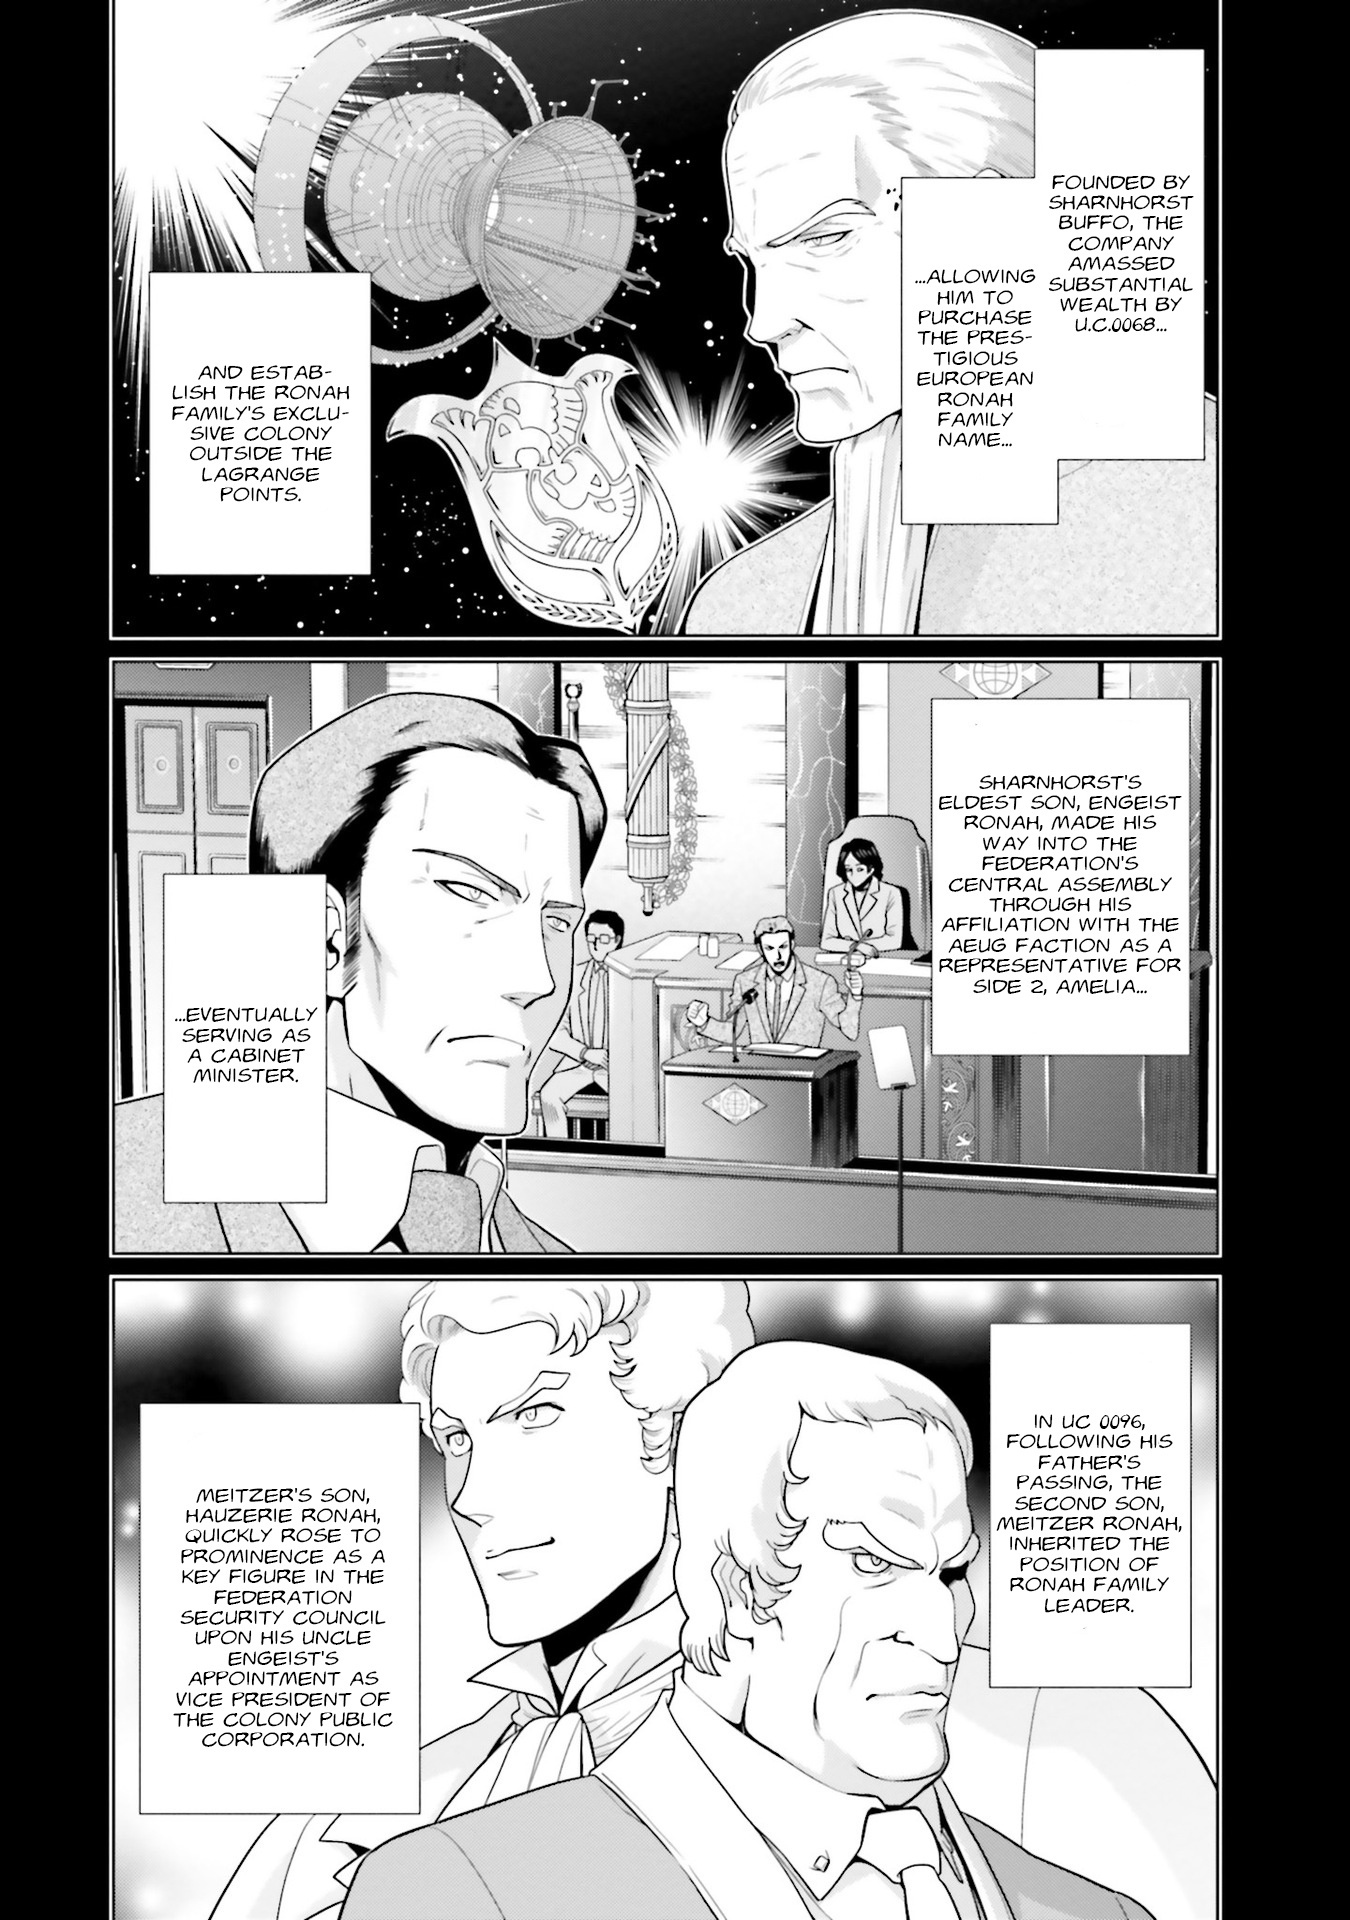 Mobile Suit Gundam F90 Ff Vol.7 Chapter 25: Ideals, A Seductive Flower That Demands Blood - Picture 2